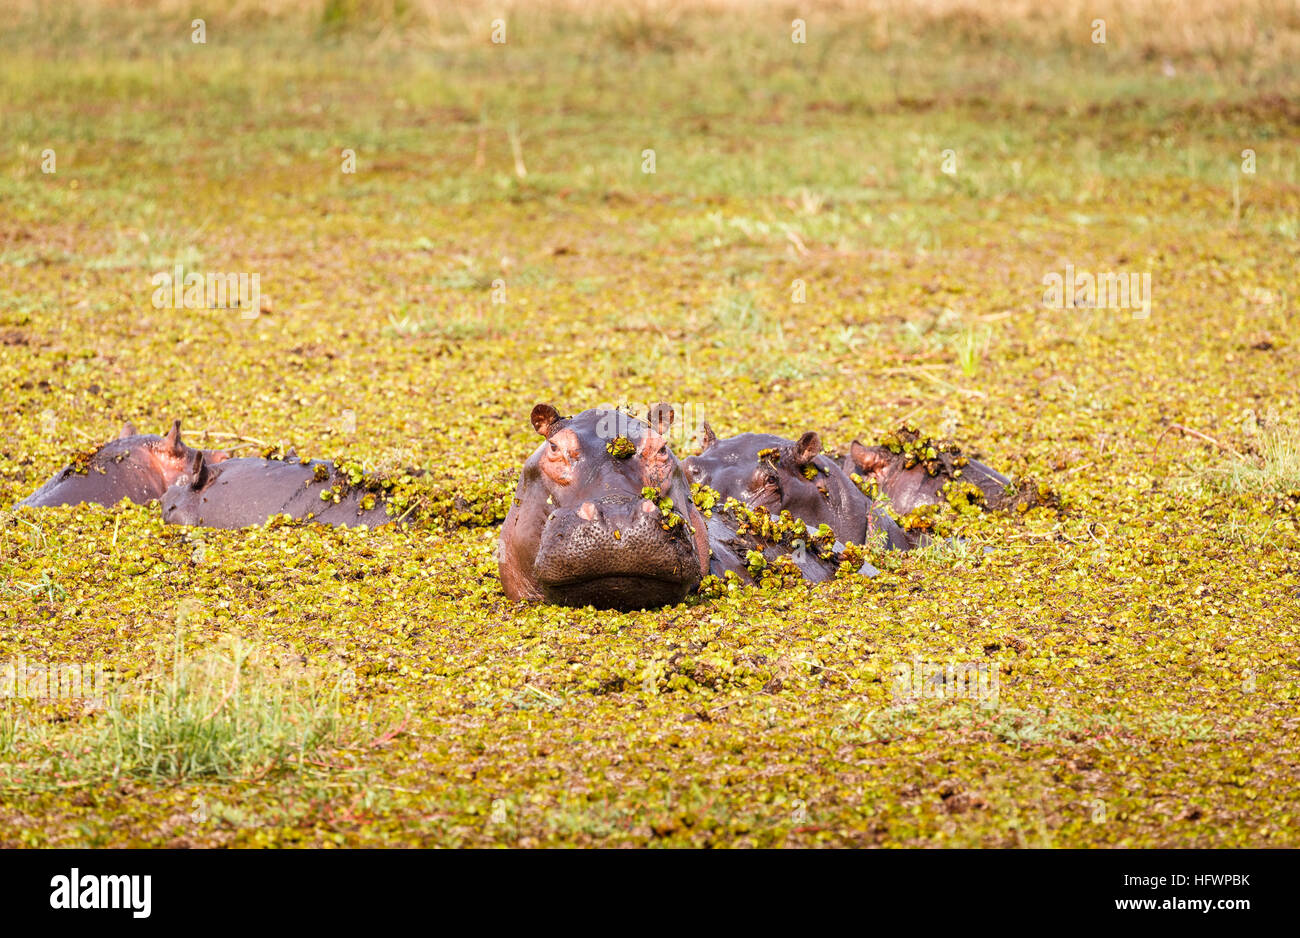 Hippopotamus (Hippopotamus amphibius) head emerging from water covered in pond weed, Moremi Game Reserve, Okavango Delta, Kalahari, Botswana, Africa Stock Photo